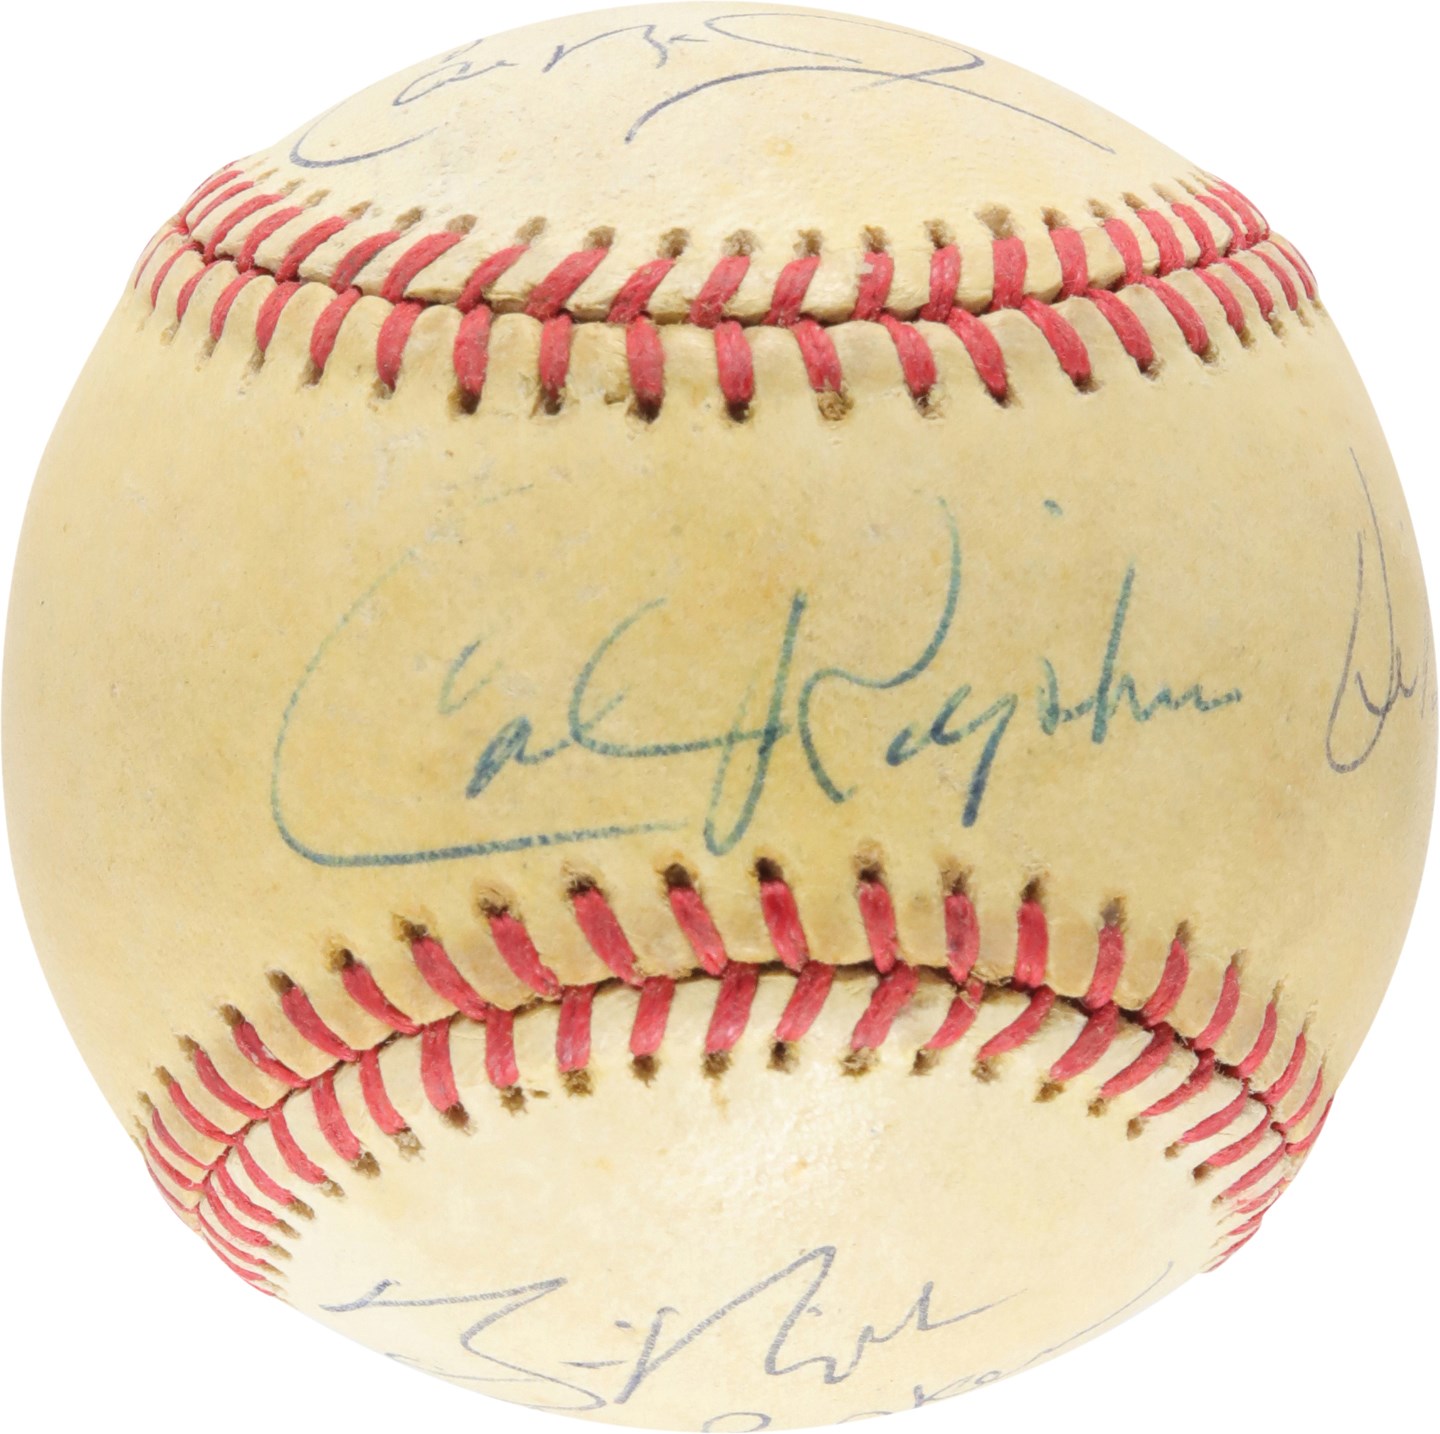 - Call Ripken Family-Signed Baseball by Six Members (PSA)